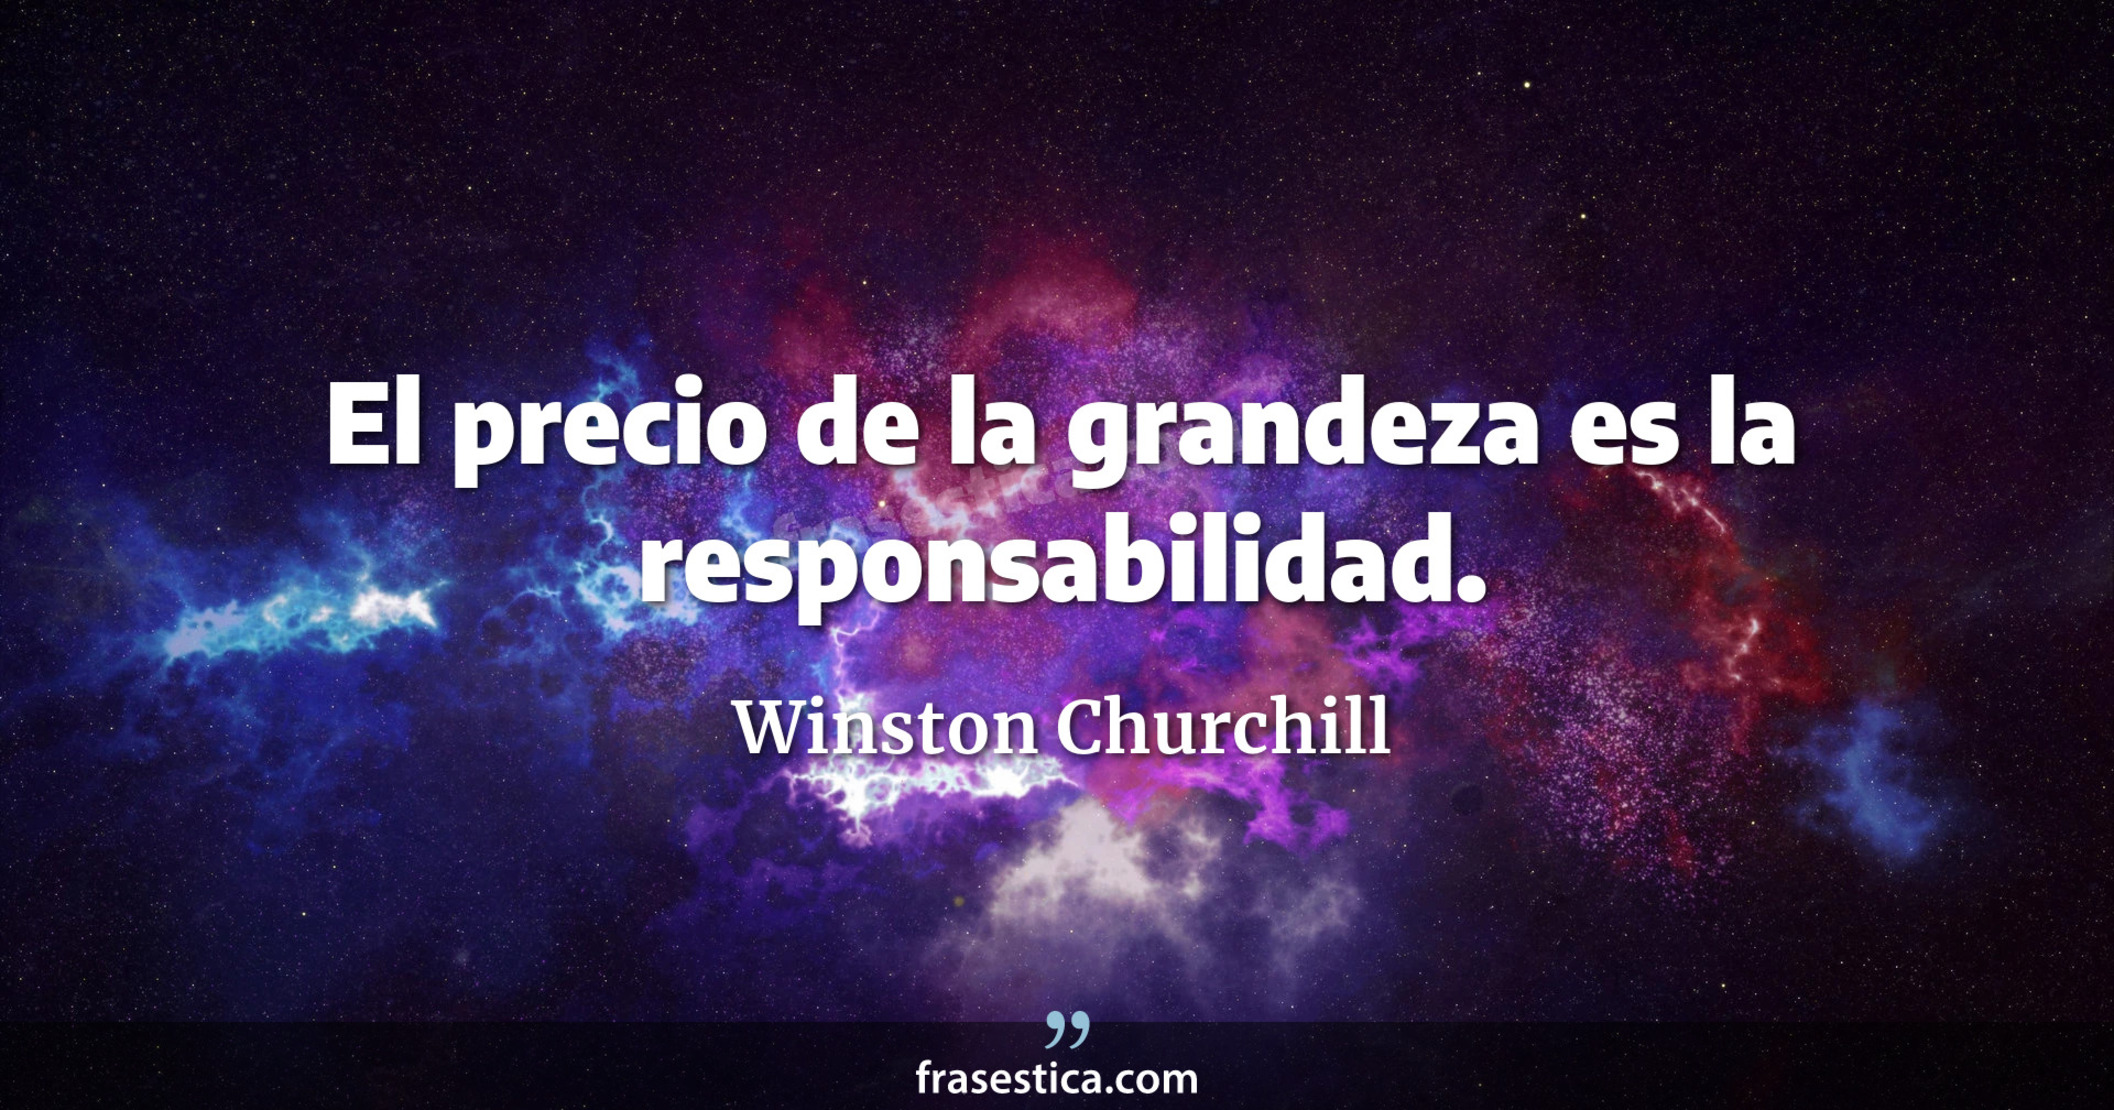 El precio de la grandeza es la responsabilidad. - Winston Churchill